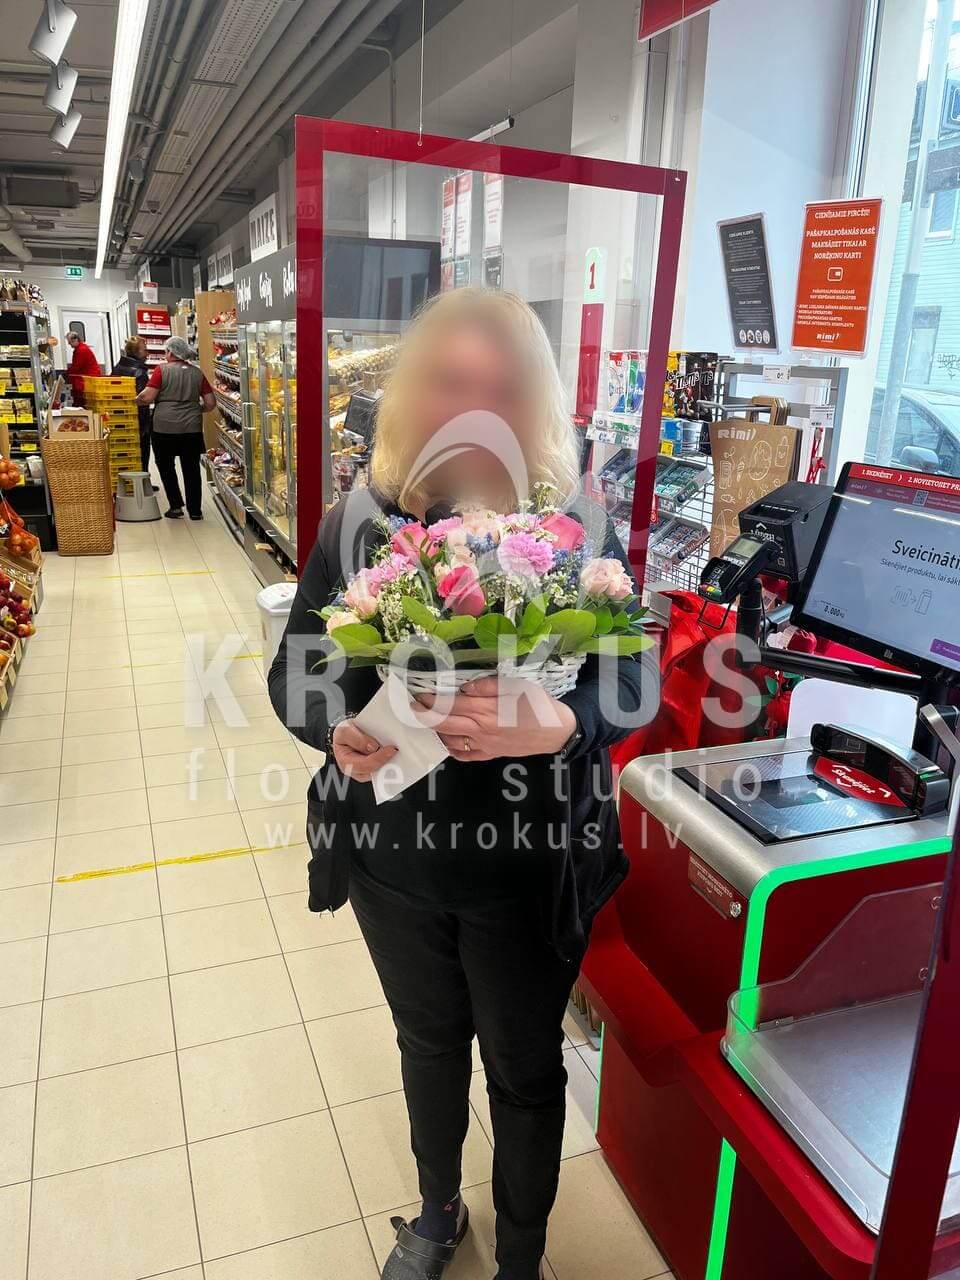 Доставка цветов в город Рига (кустовые розырозовые розыгвоздикиваксфлауэрстатицасалал)